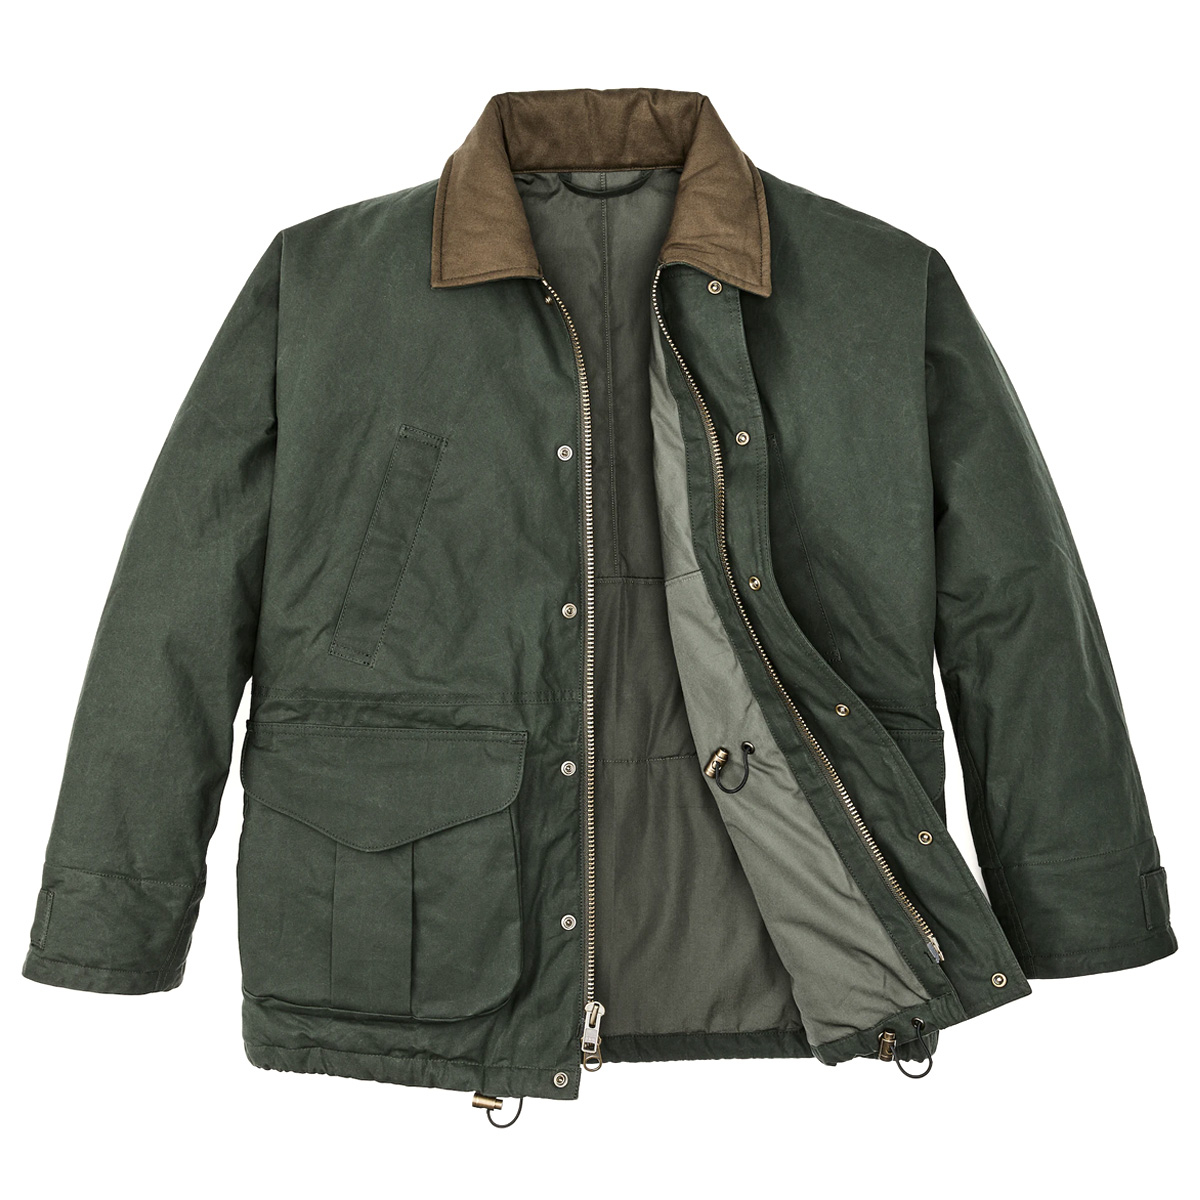 Filson Ranger Insulated Field Jacket Deep Forest, een ideale mix van traditionele stof en geavanceerde isolatie